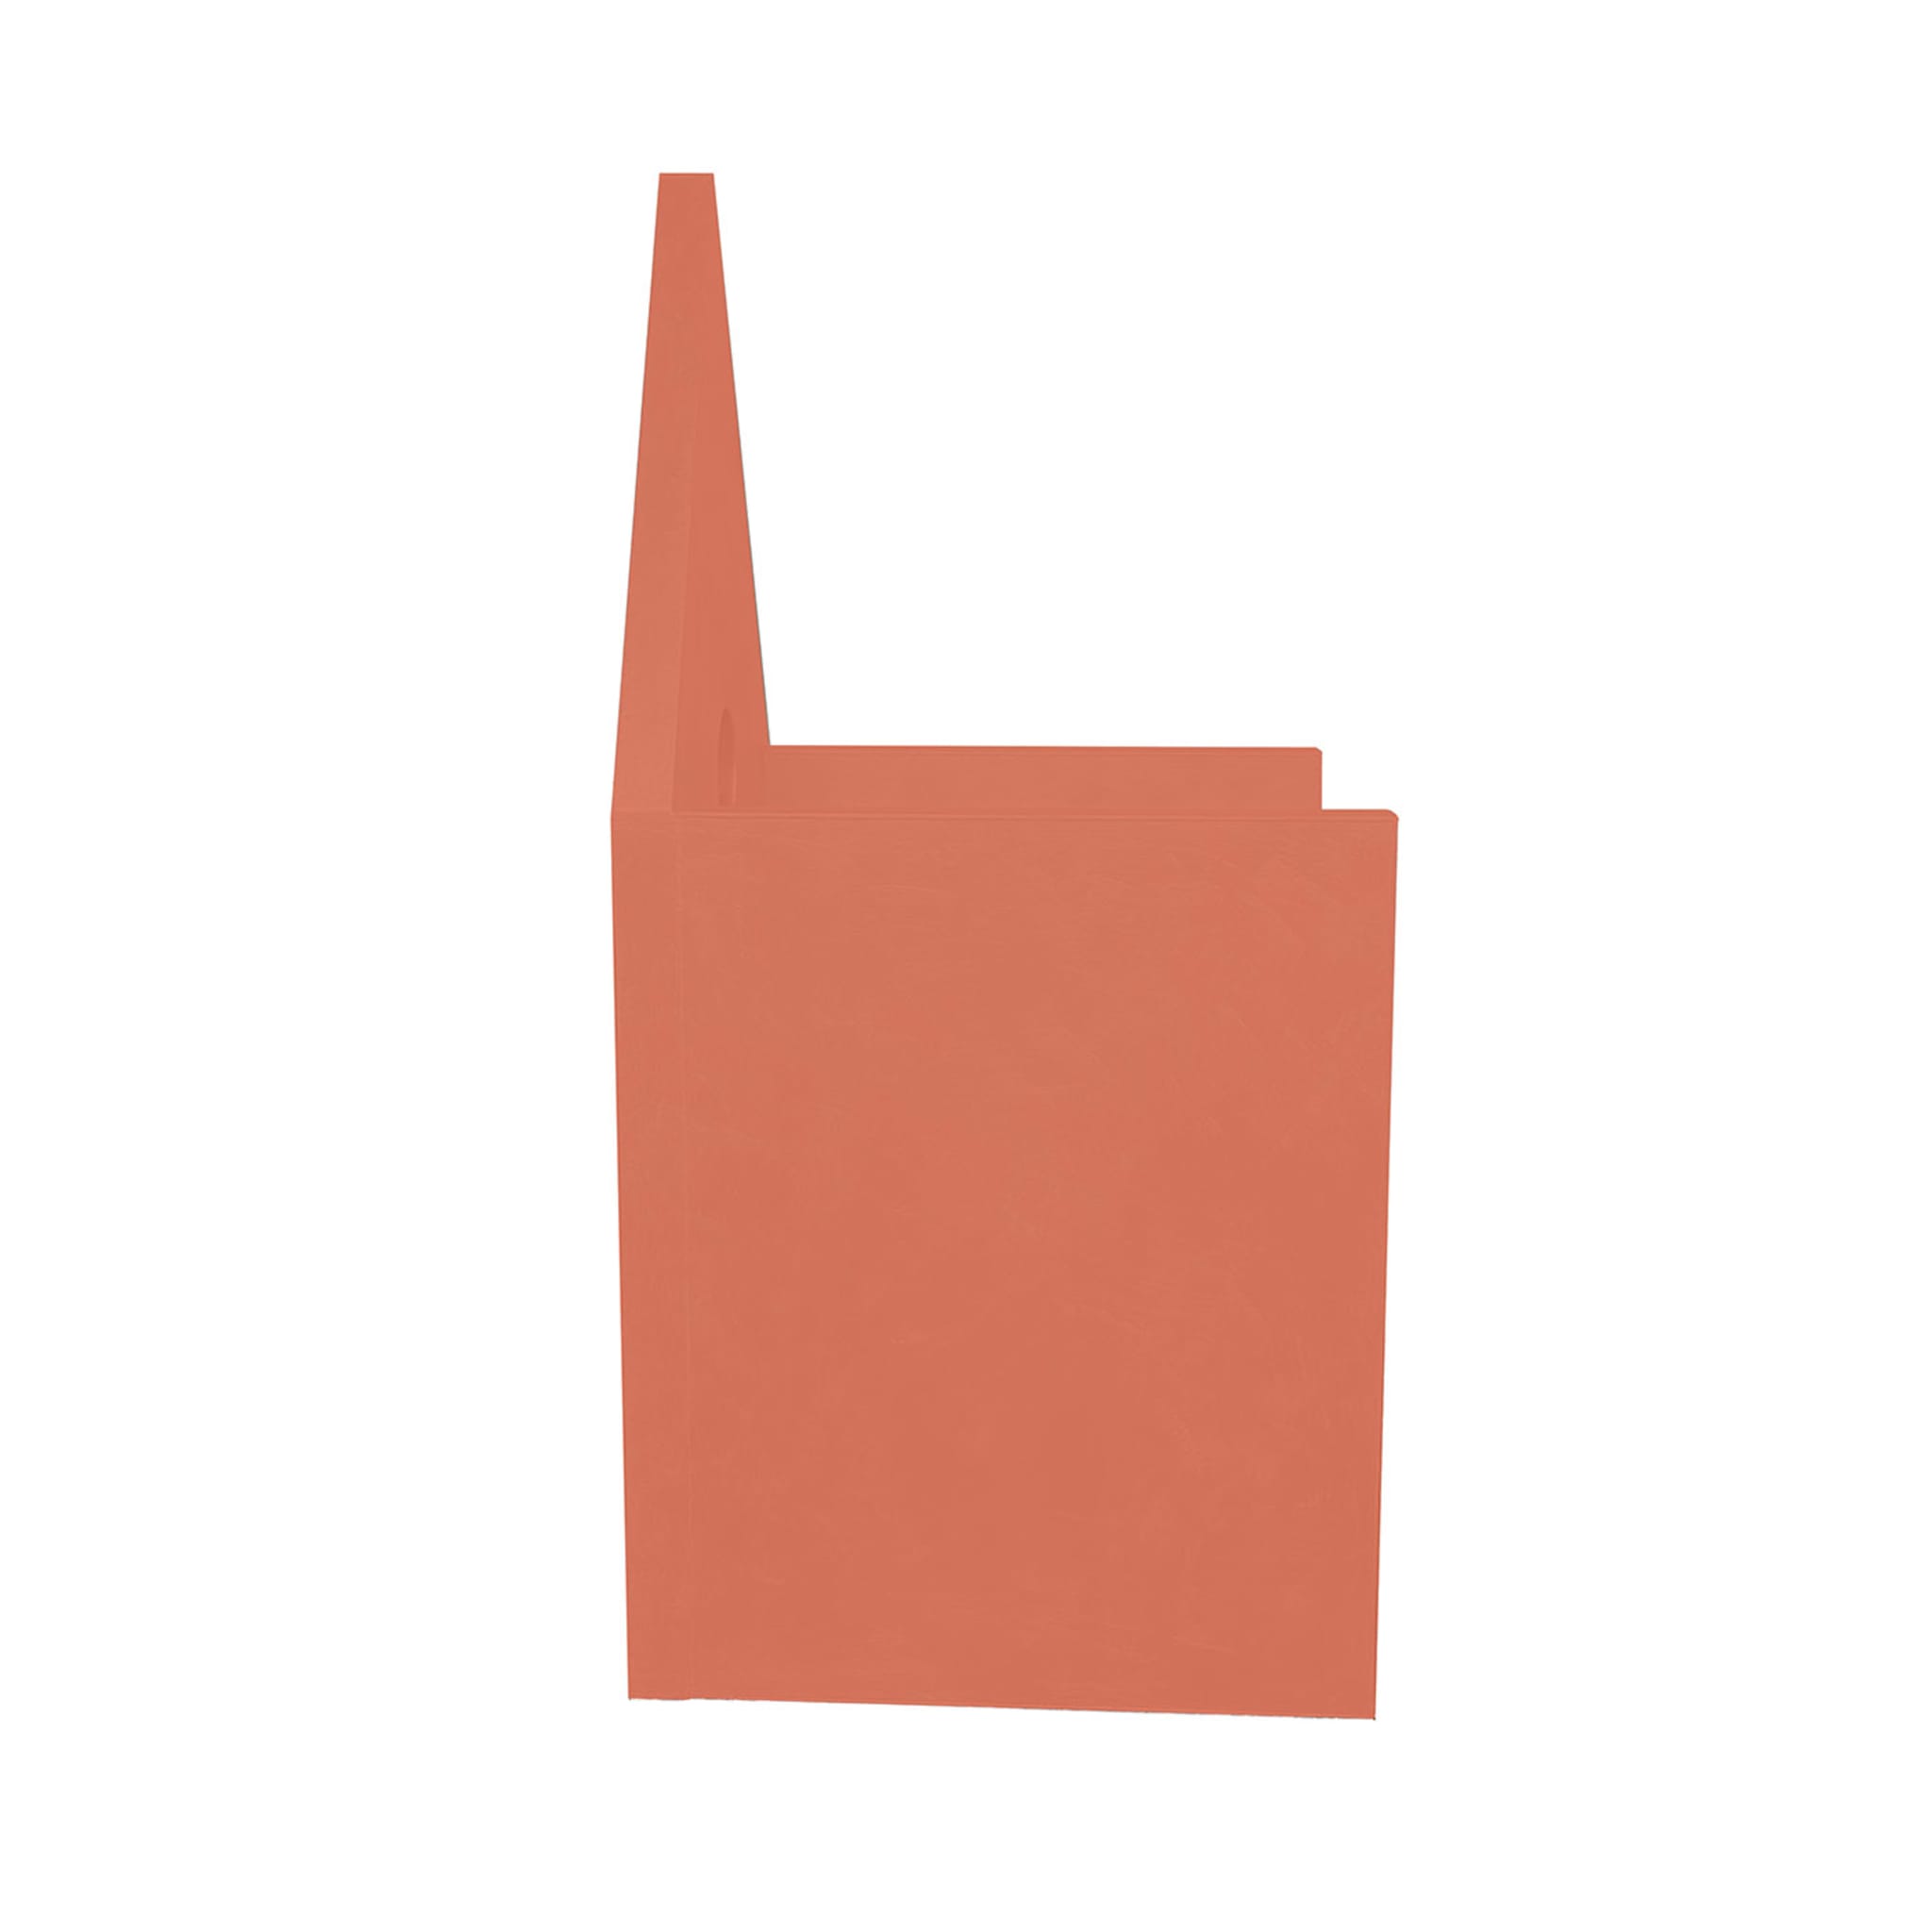 Vescovina Orange Armchair by Lanfranco Benvenuti - Alternative view 3